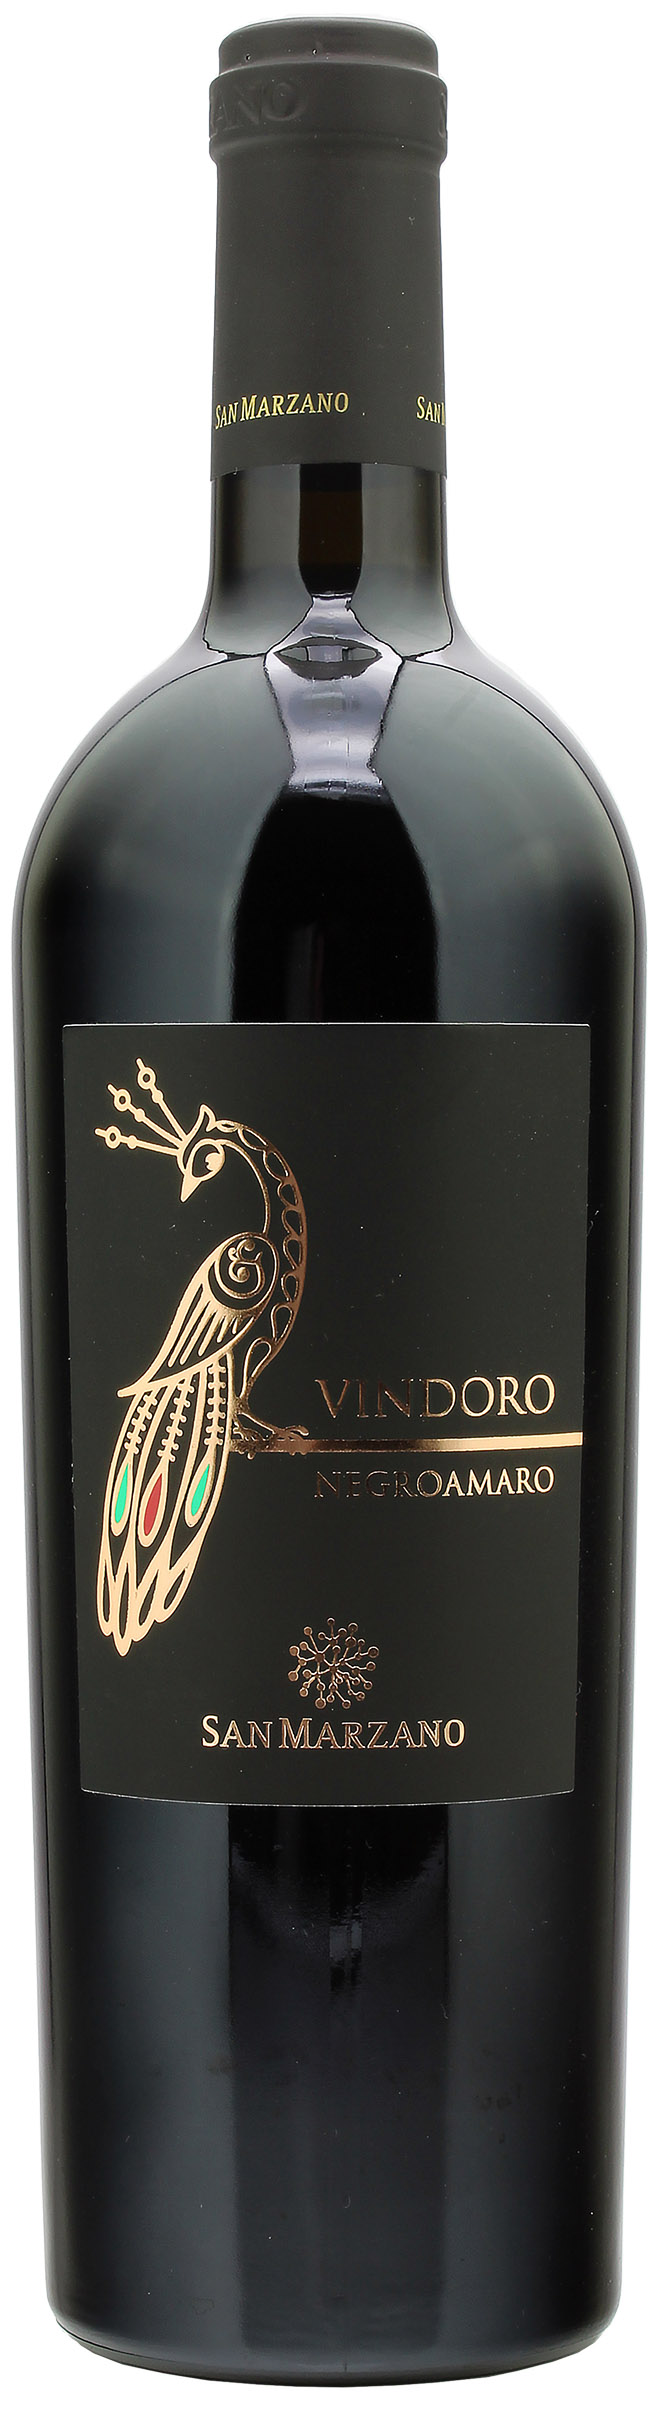 San Marzano Vindoro Negroamaro Salento 14.5% 0,75l